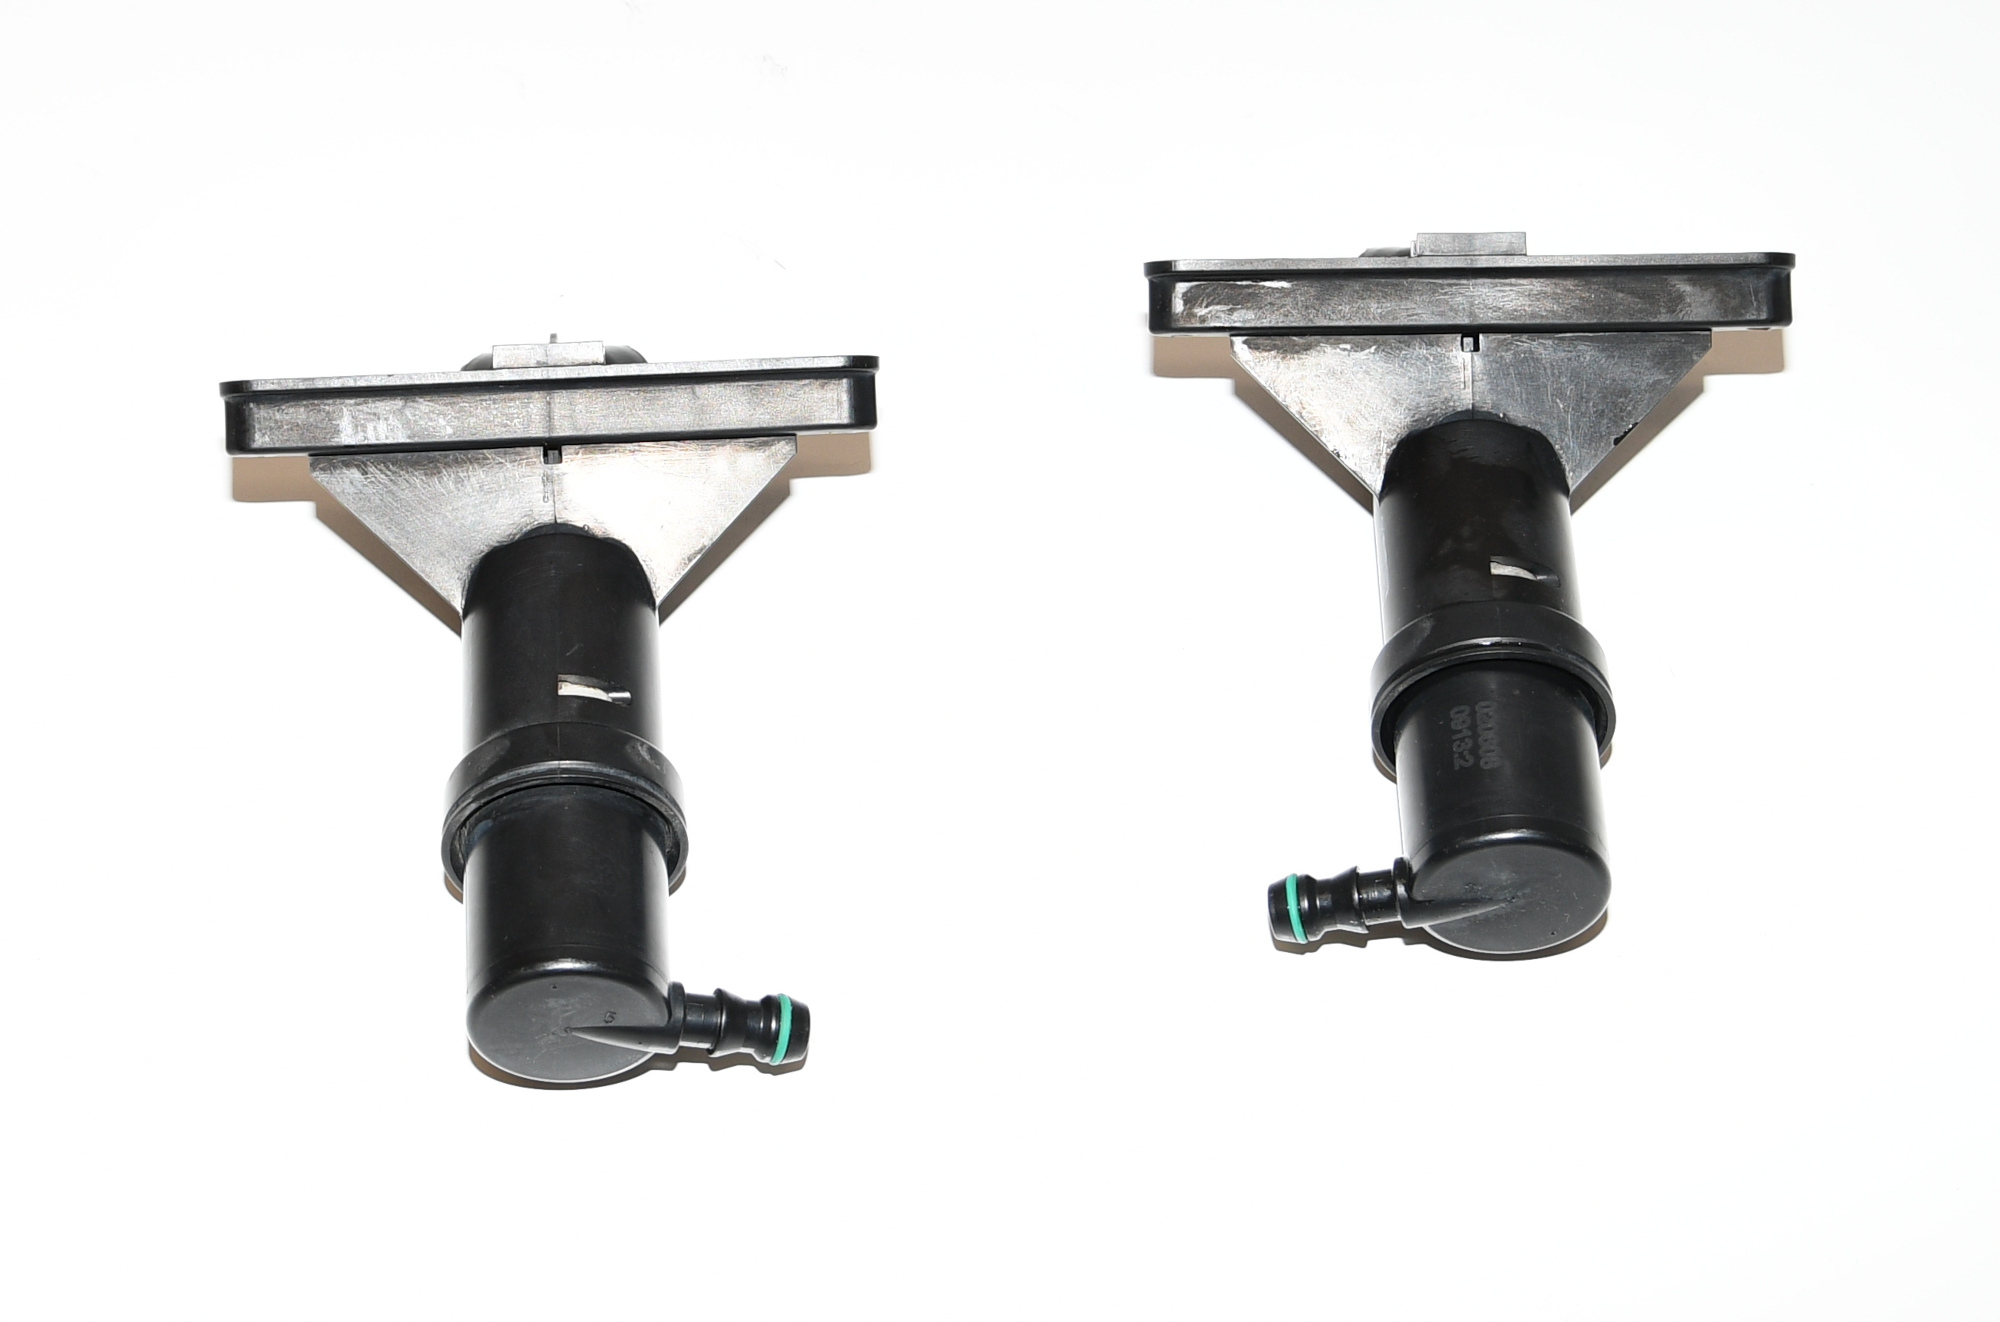 Système de lavage cylindre de levage buse de pulvérisation SWRA avant, droite, gauche E60 525d original 